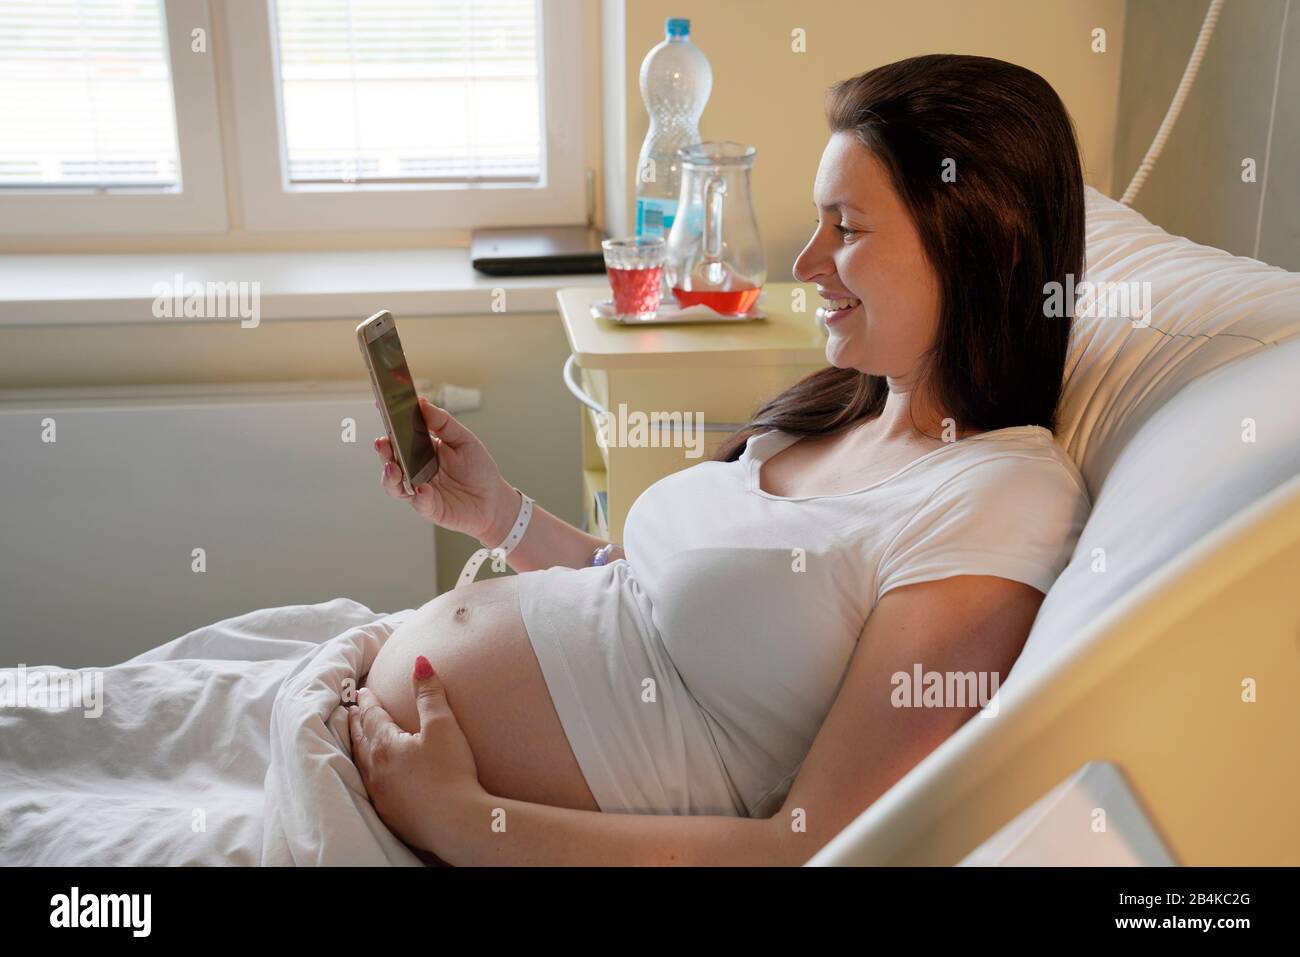 Embarazo de alto riesgo, mujer embarazada acostada en el hospital en la cama de maternidad y mirando en su teléfono móvil Foto de stock